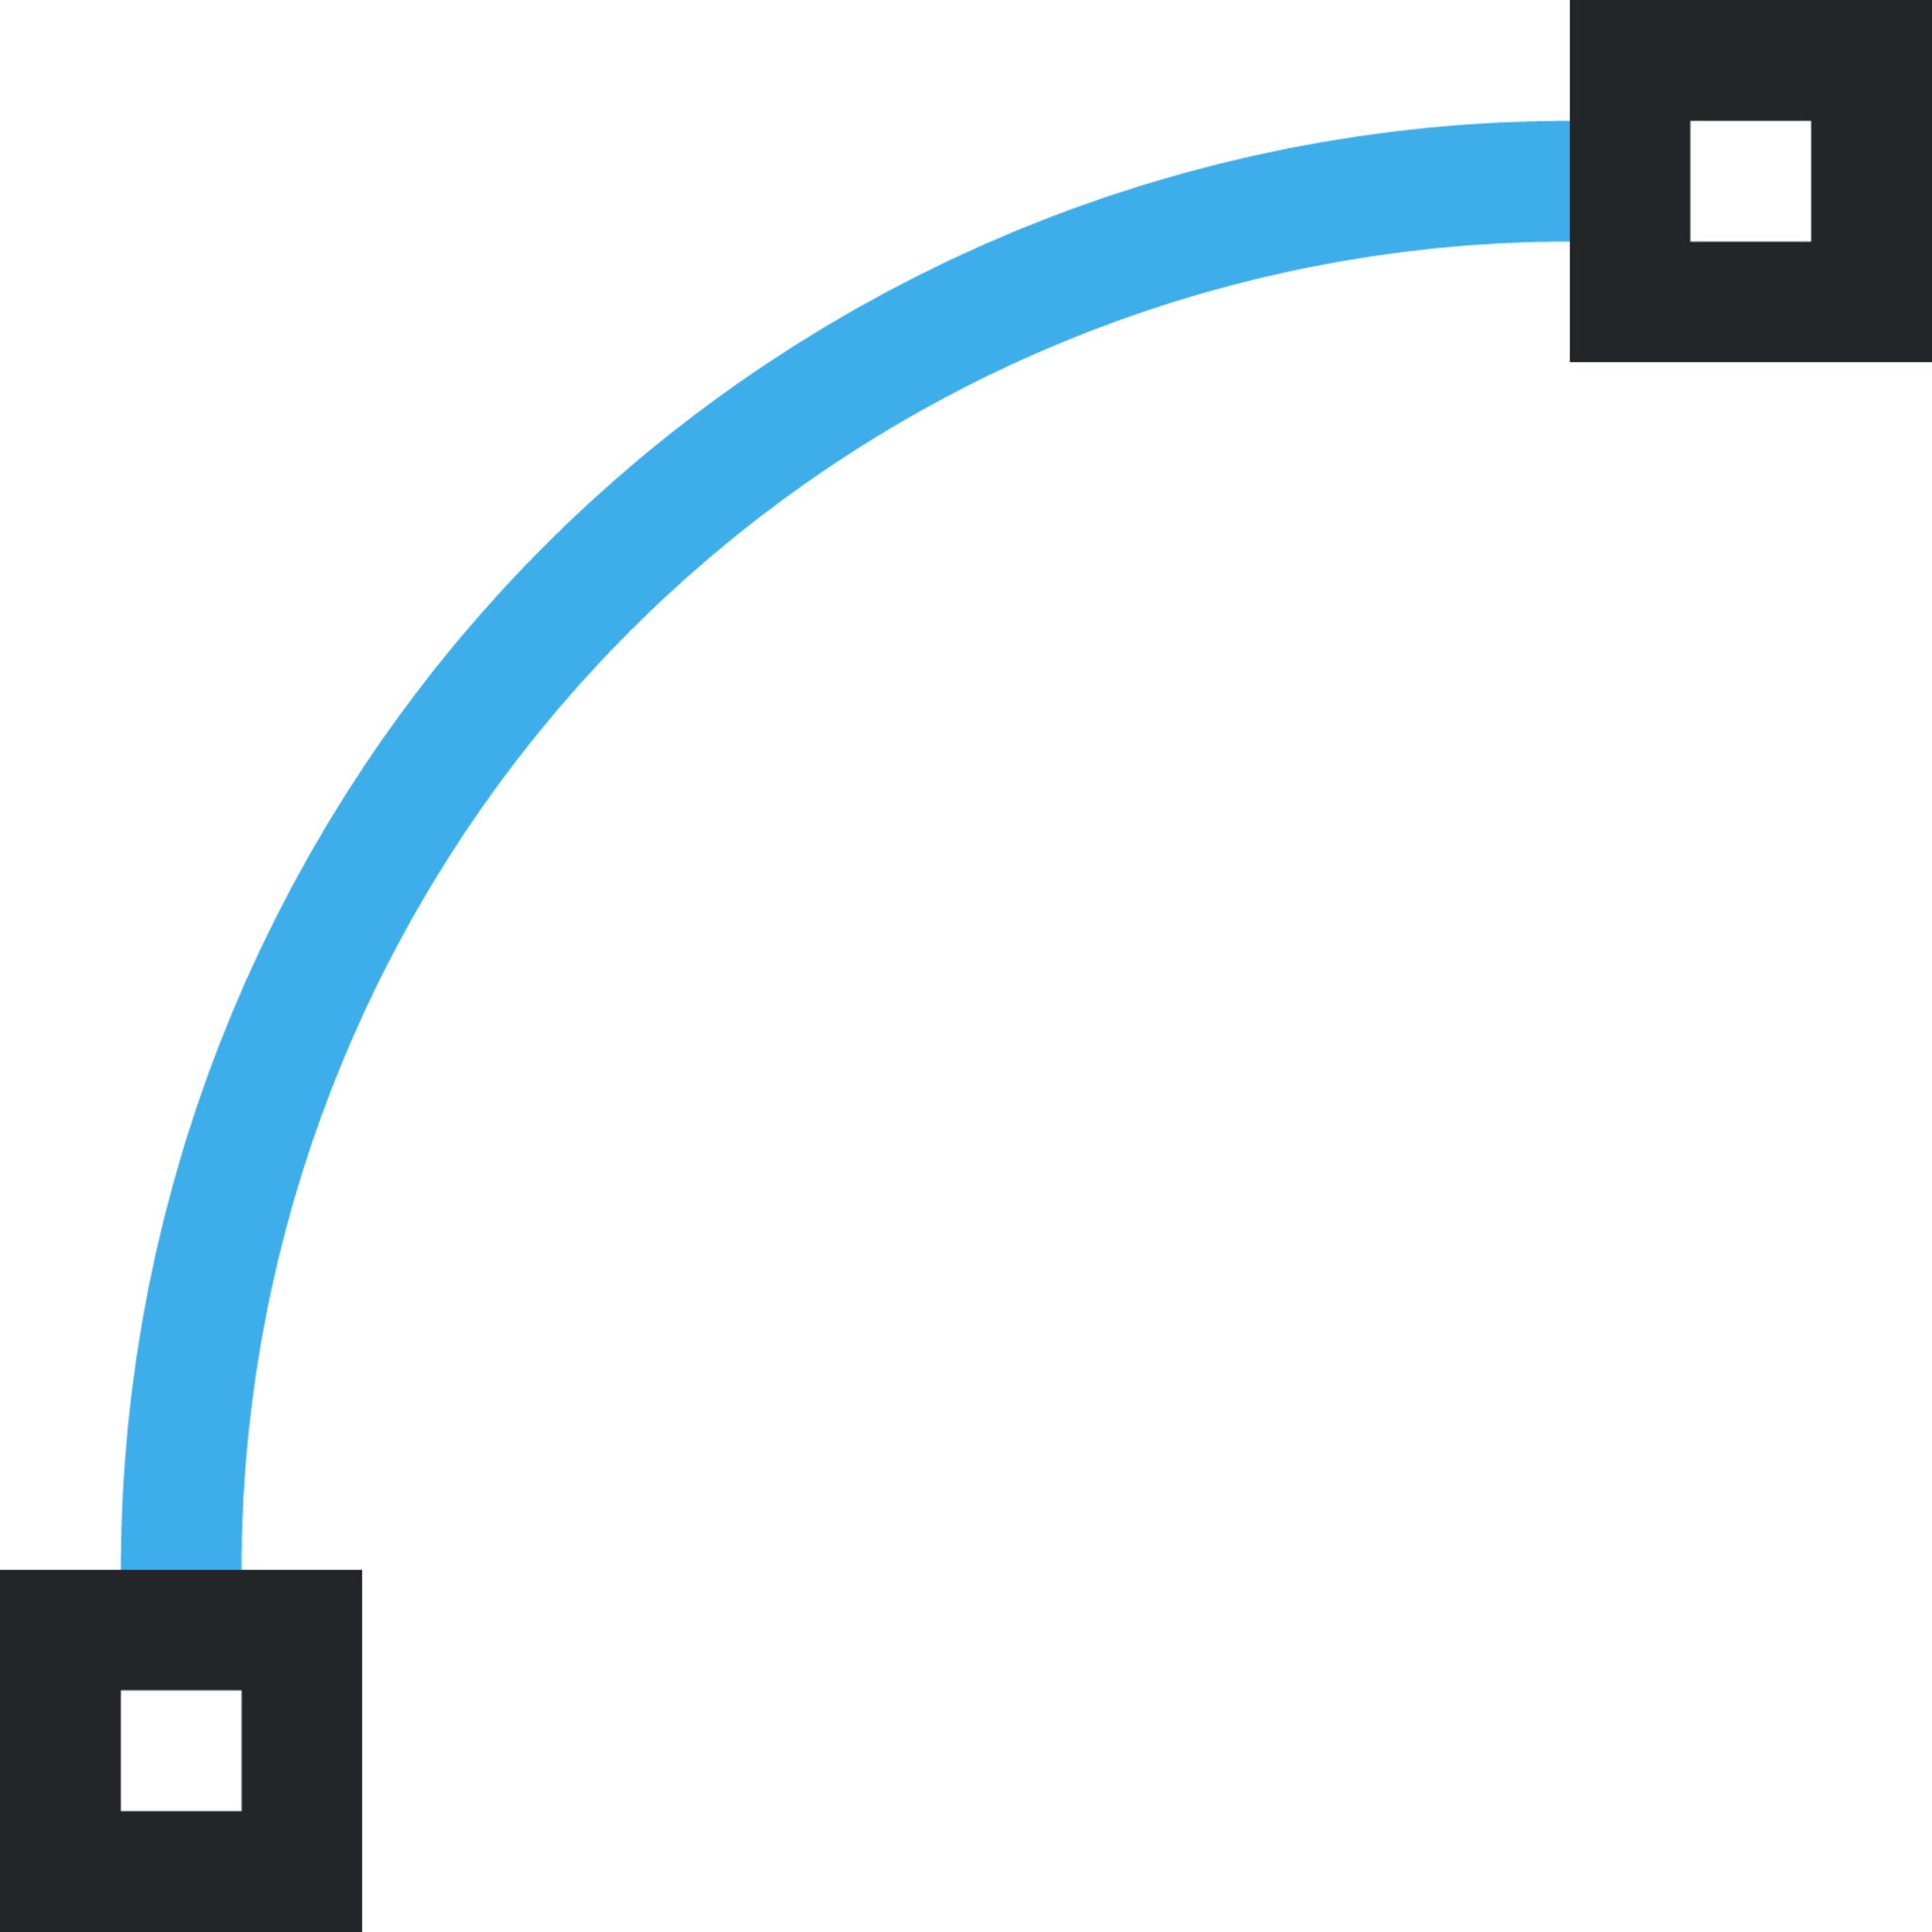 node segment curve icon